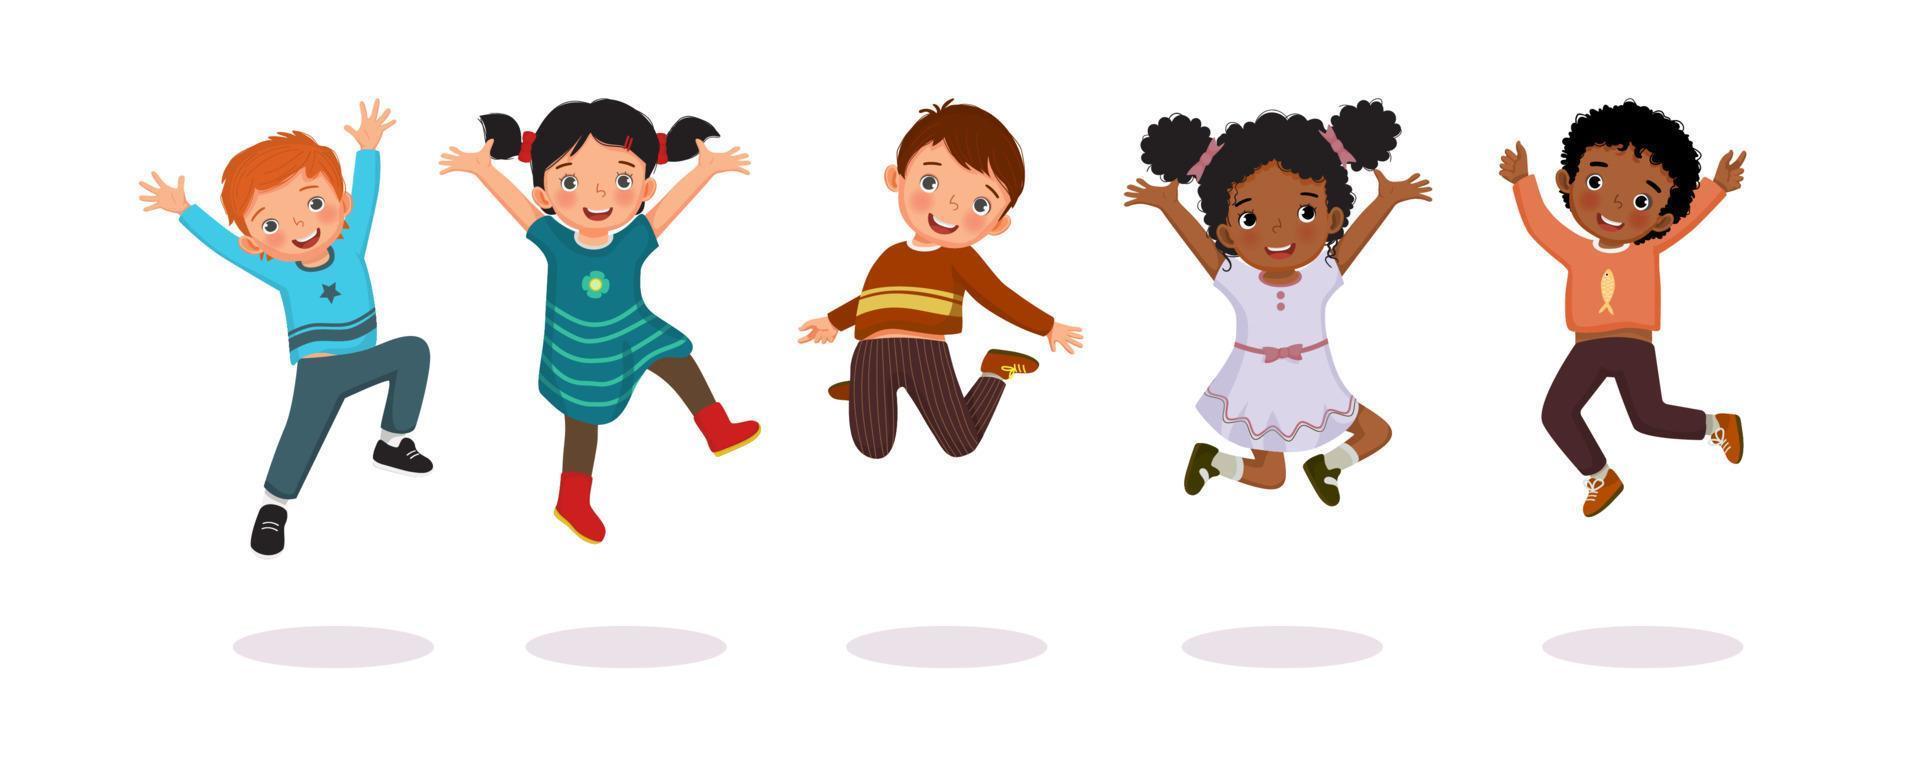 grupo de niños felices saltando juntos alegremente con las manos levantadas en el aire. vector de niños, niños y niñas activos, divirtiéndose mostrando diferentes poses de acción.